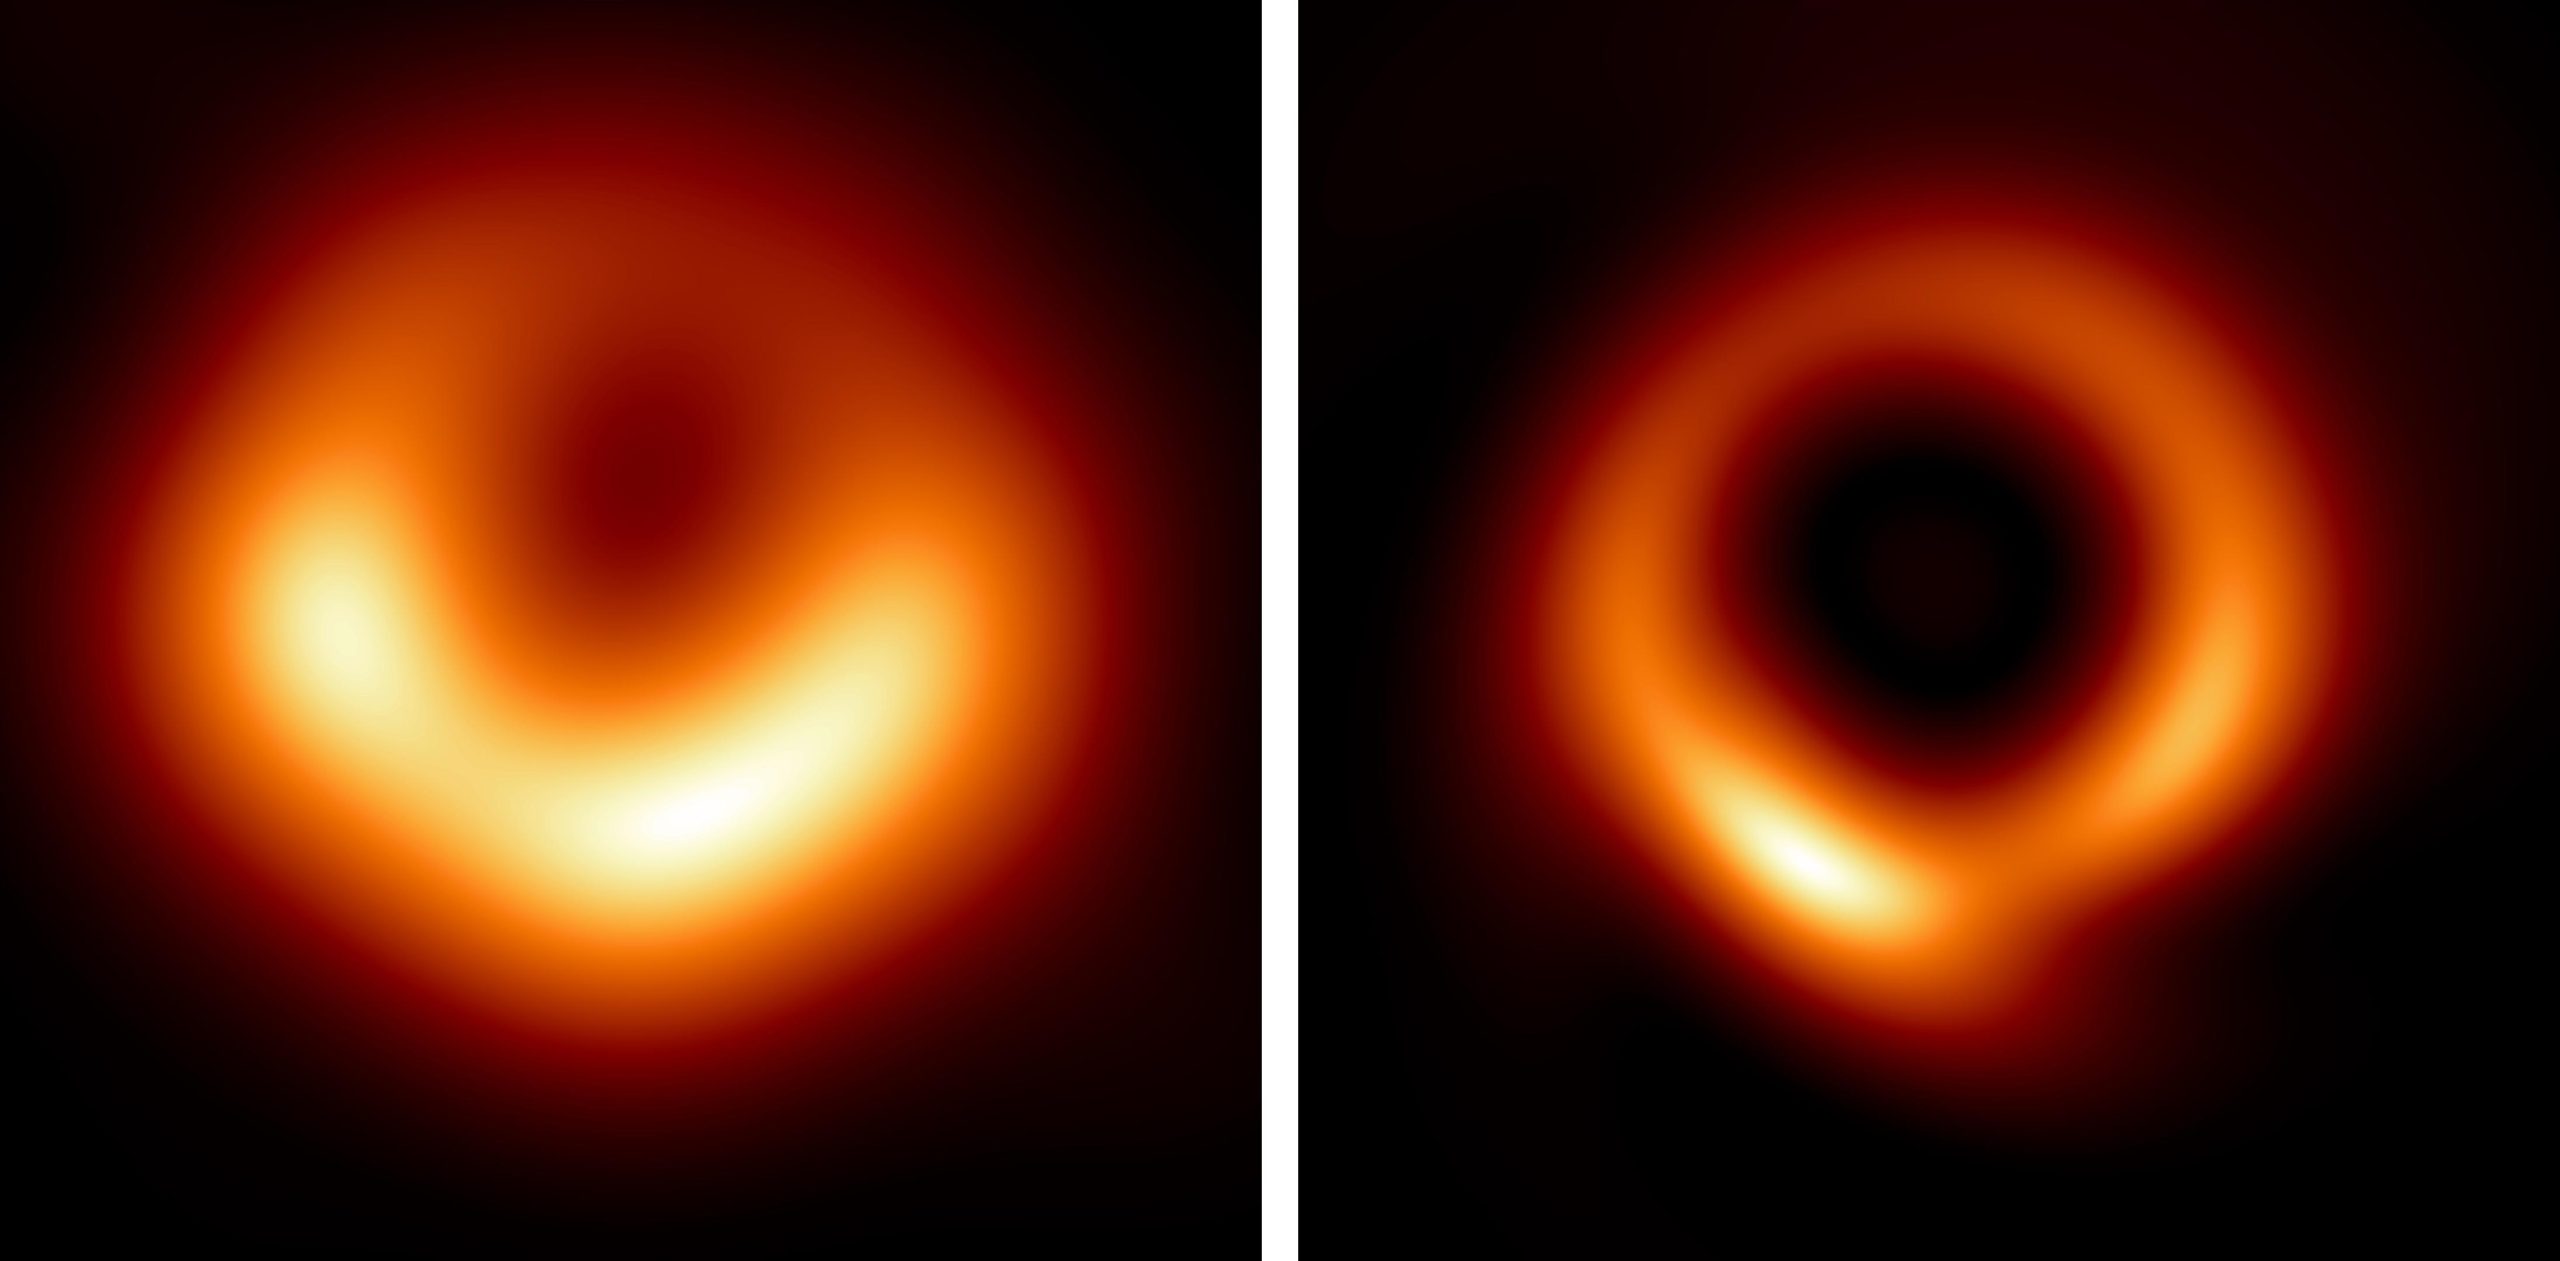 L’intelligence artificielle révèle une vue époustouflante en haute résolution du trou noir supermassif de M87